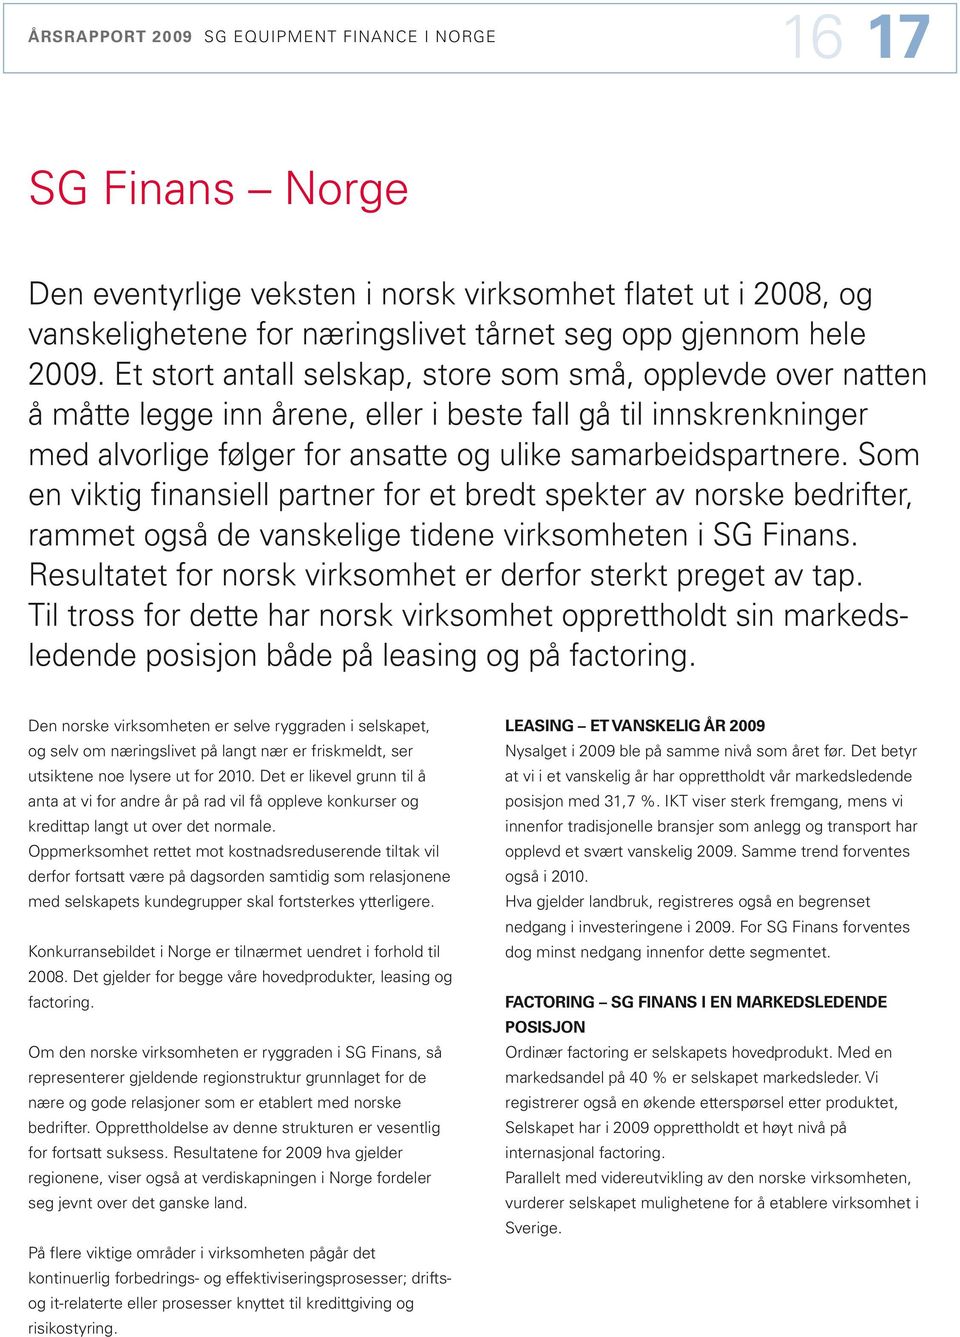 Som en viktig finansiell partner for et bredt spekter av norske bedrifter, rammet også de vanskelige tidene virksomheten i SG Finans. Resultatet for norsk virksomhet er derfor sterkt preget av tap.